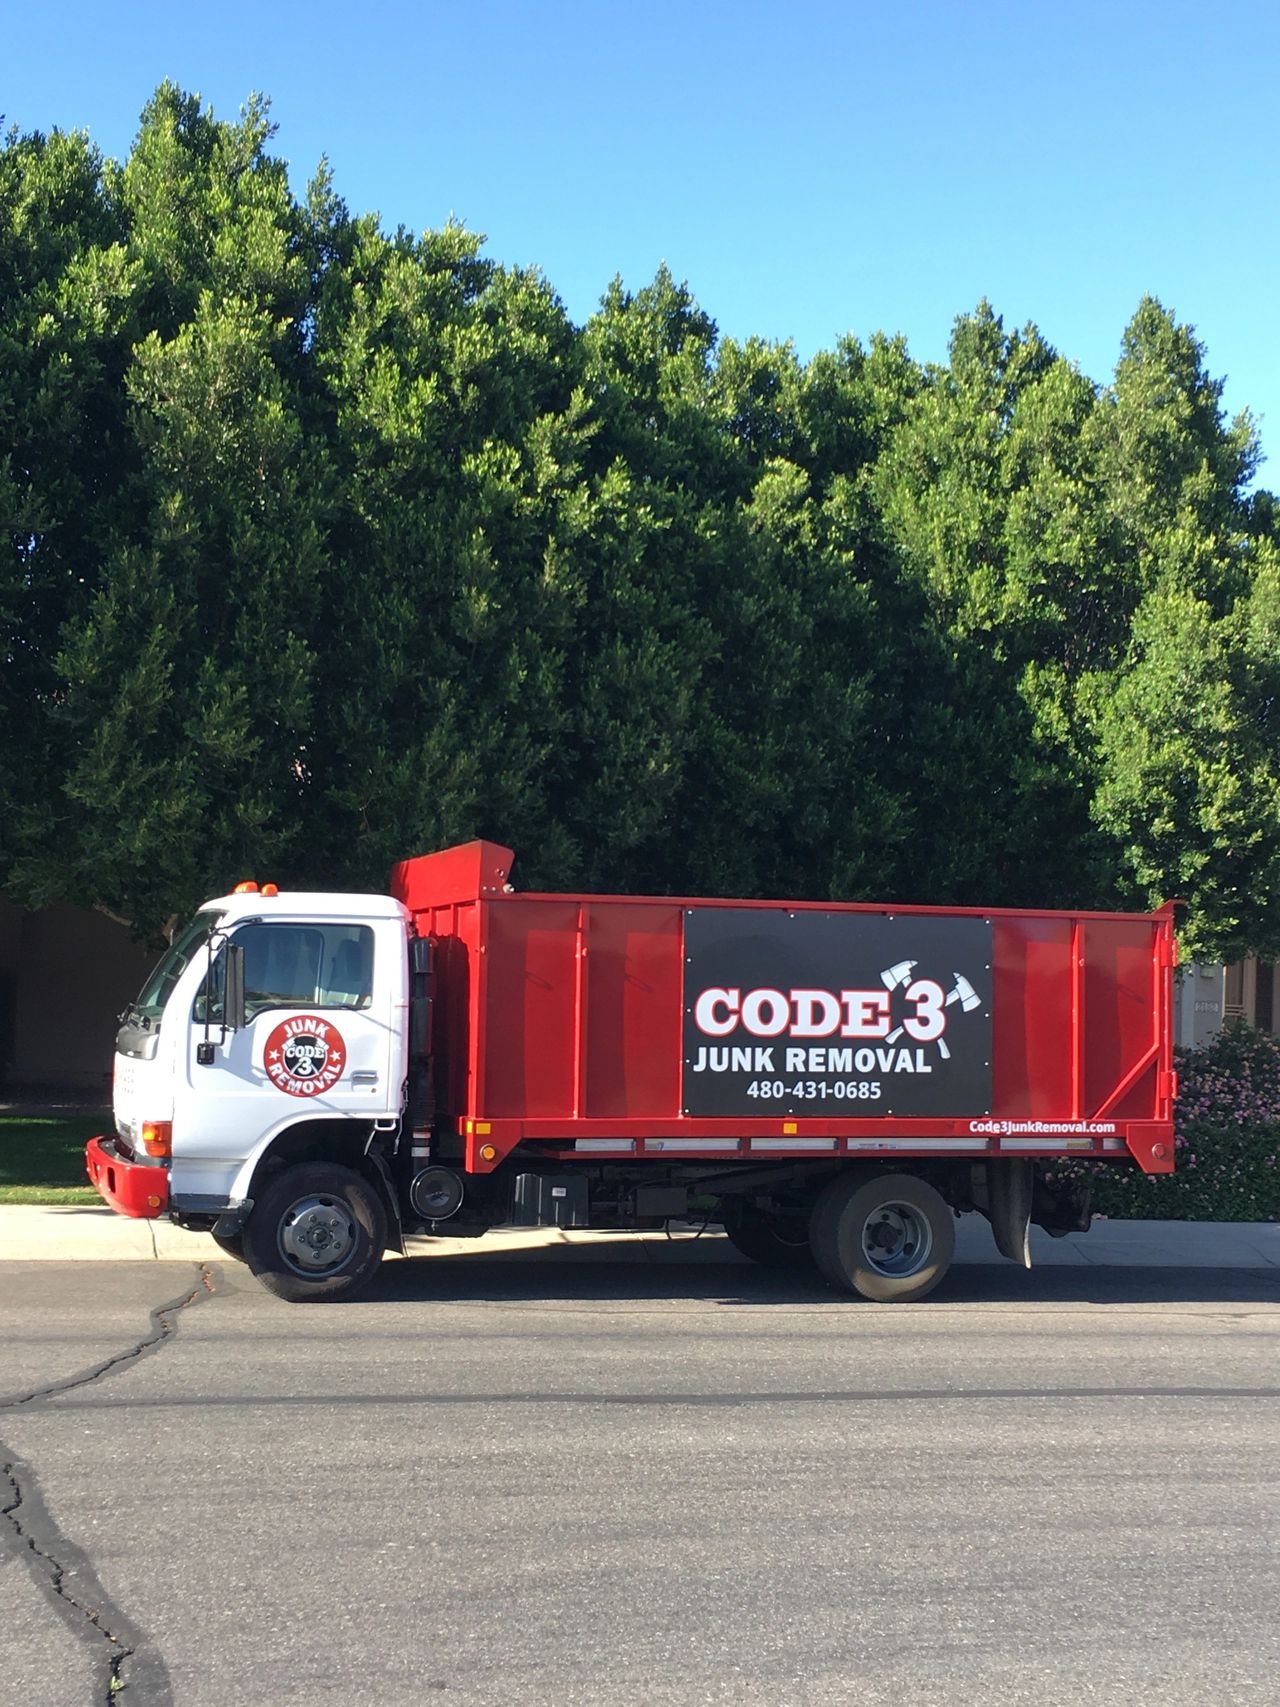 Code 3 Truck